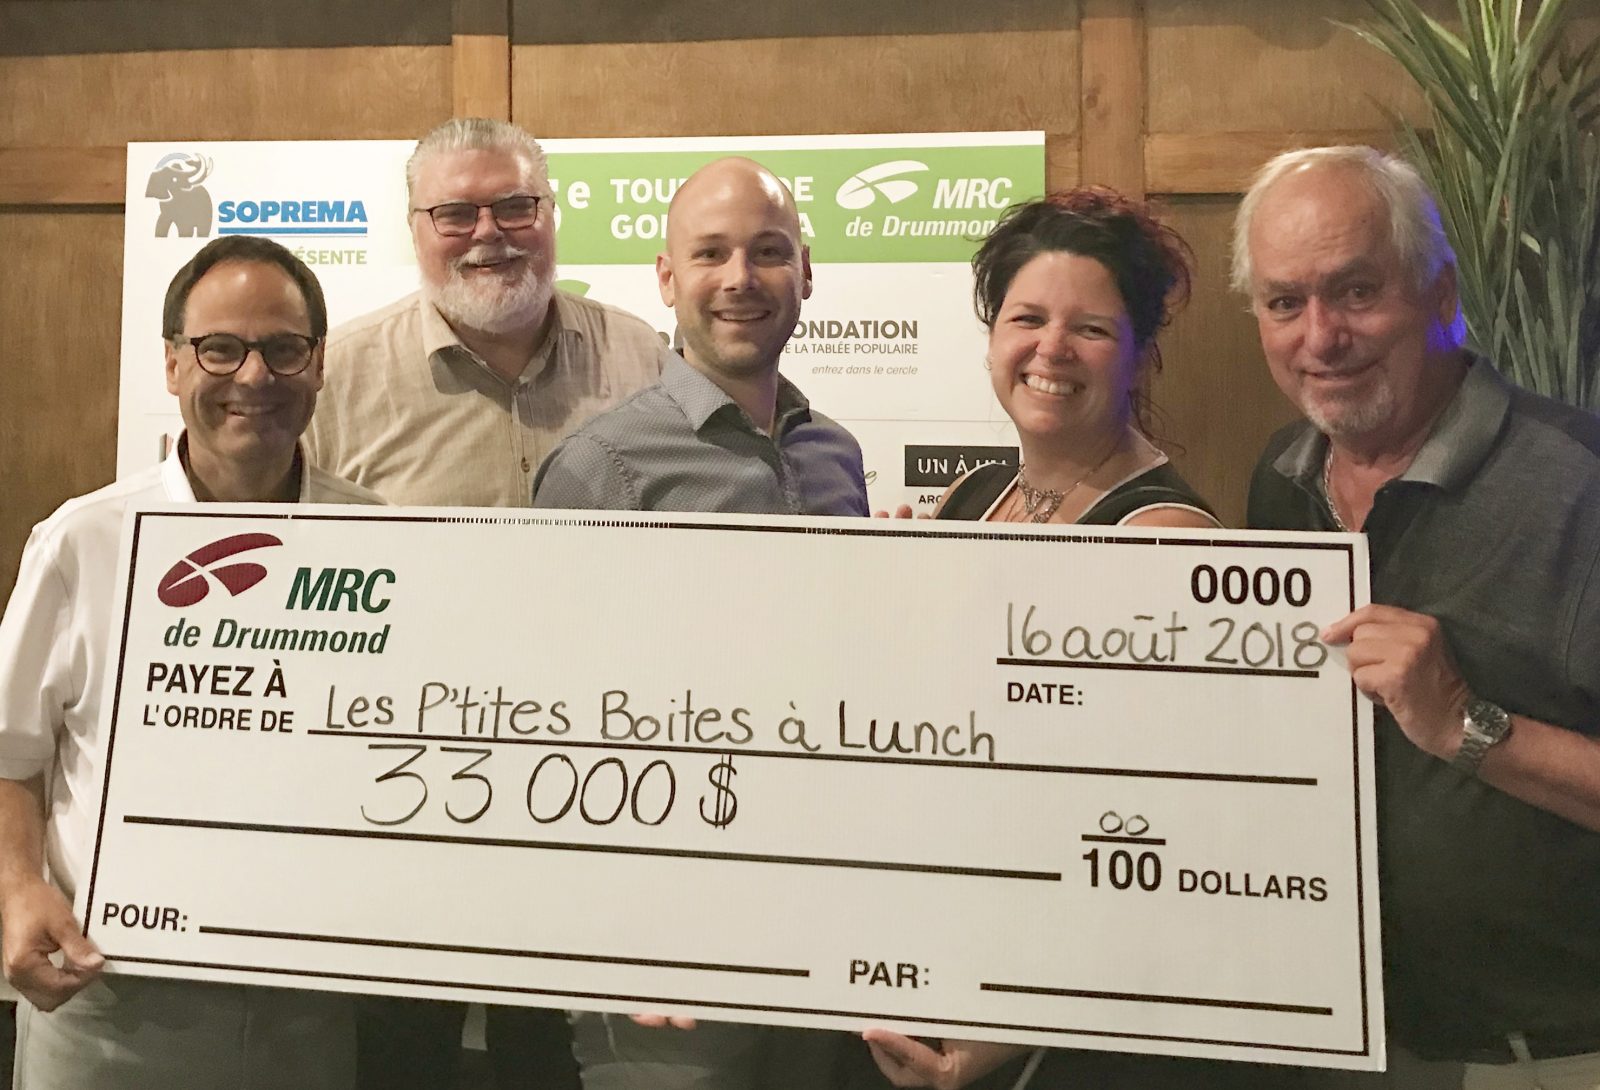 La MRC de Drummond atteint le cap des 100 000 $ en dons pour le service des P’tites boîtes à lunch